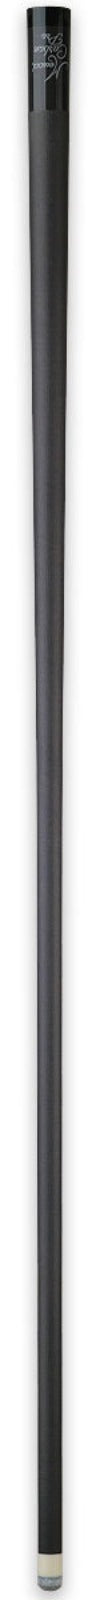 Meucci Meucci Carbon Fiber Pro Shaft - 12.5mm 